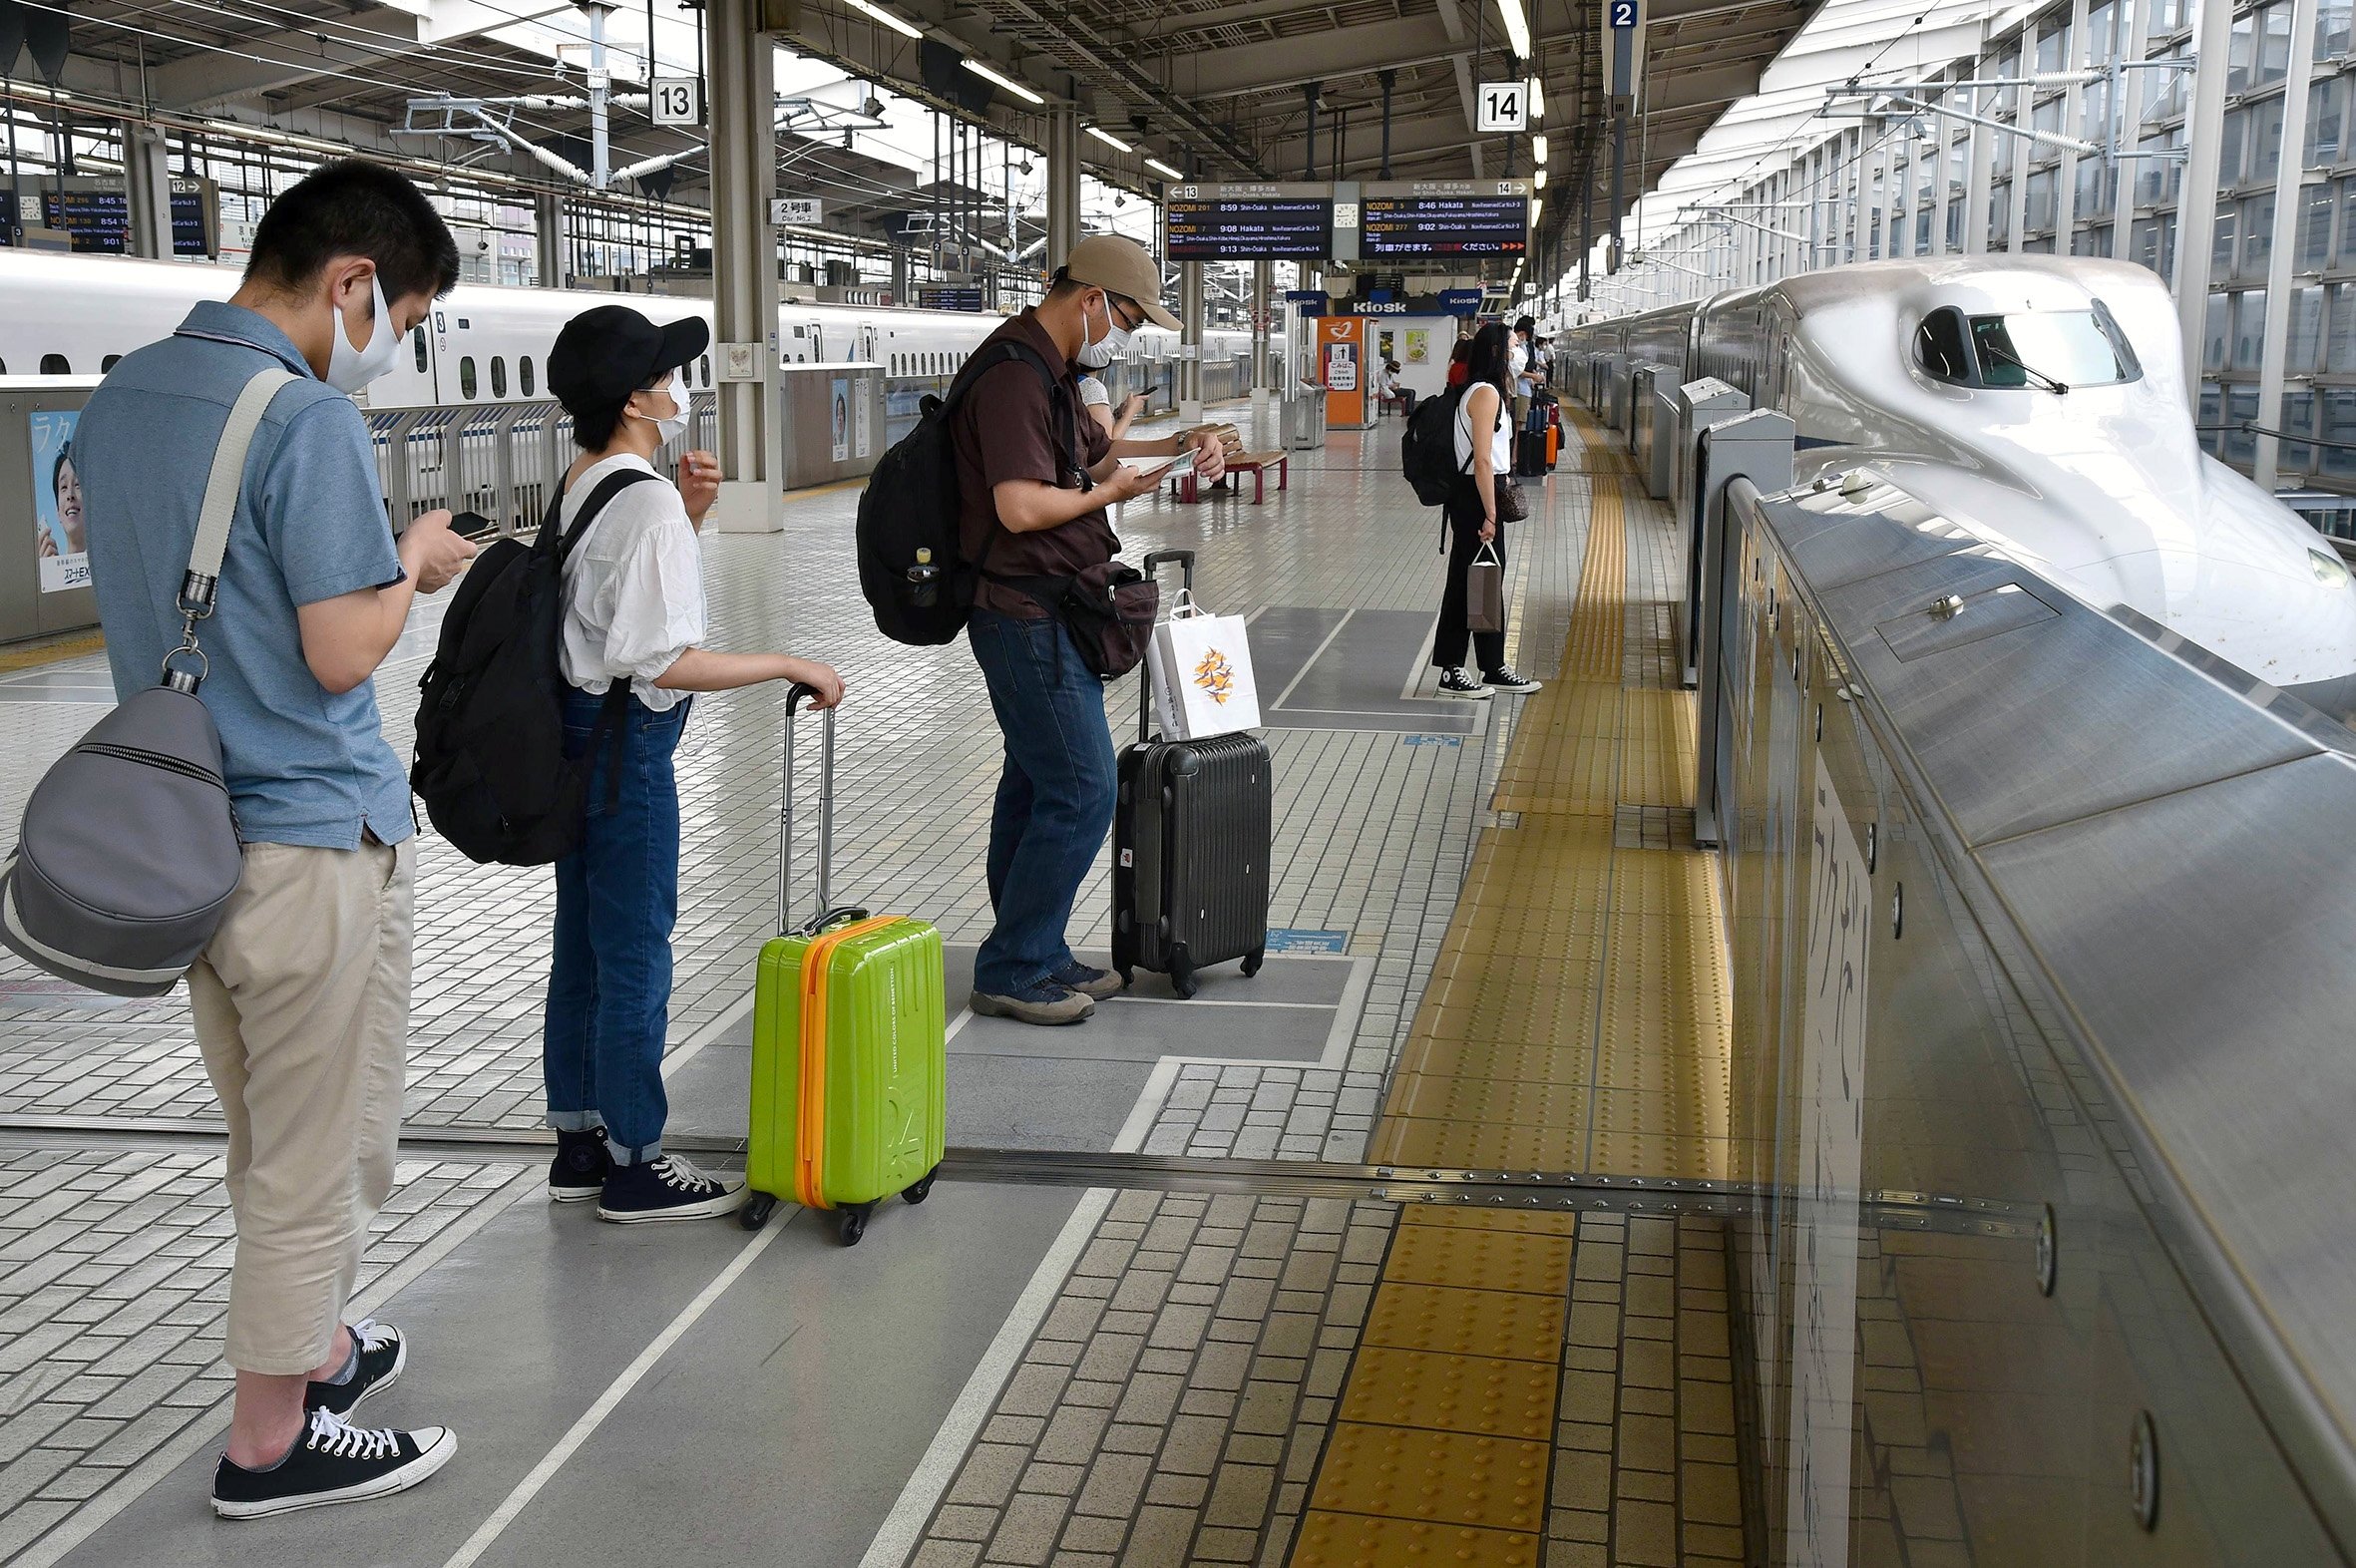 お盆の帰省客まばら、京都駅では激減　新型コロナ影響